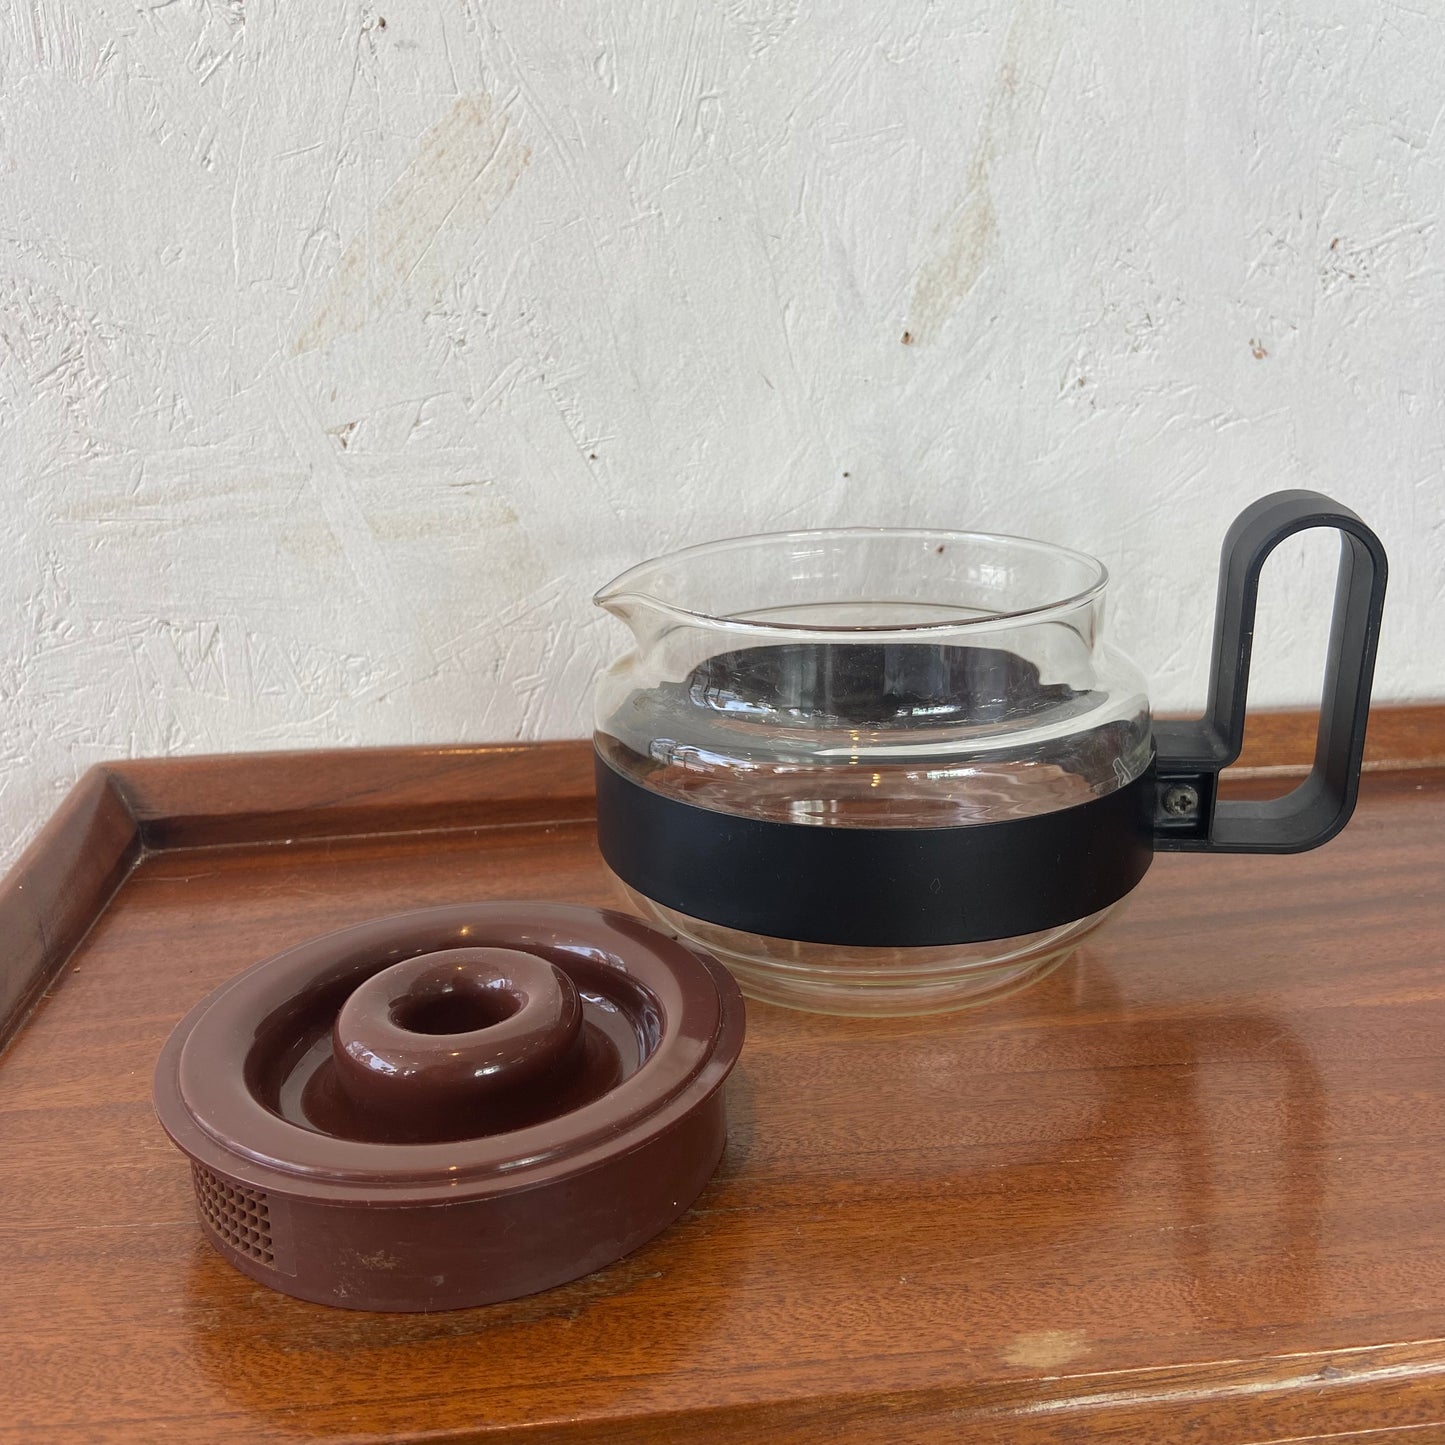 Pyrex Brasilia Tea Pot